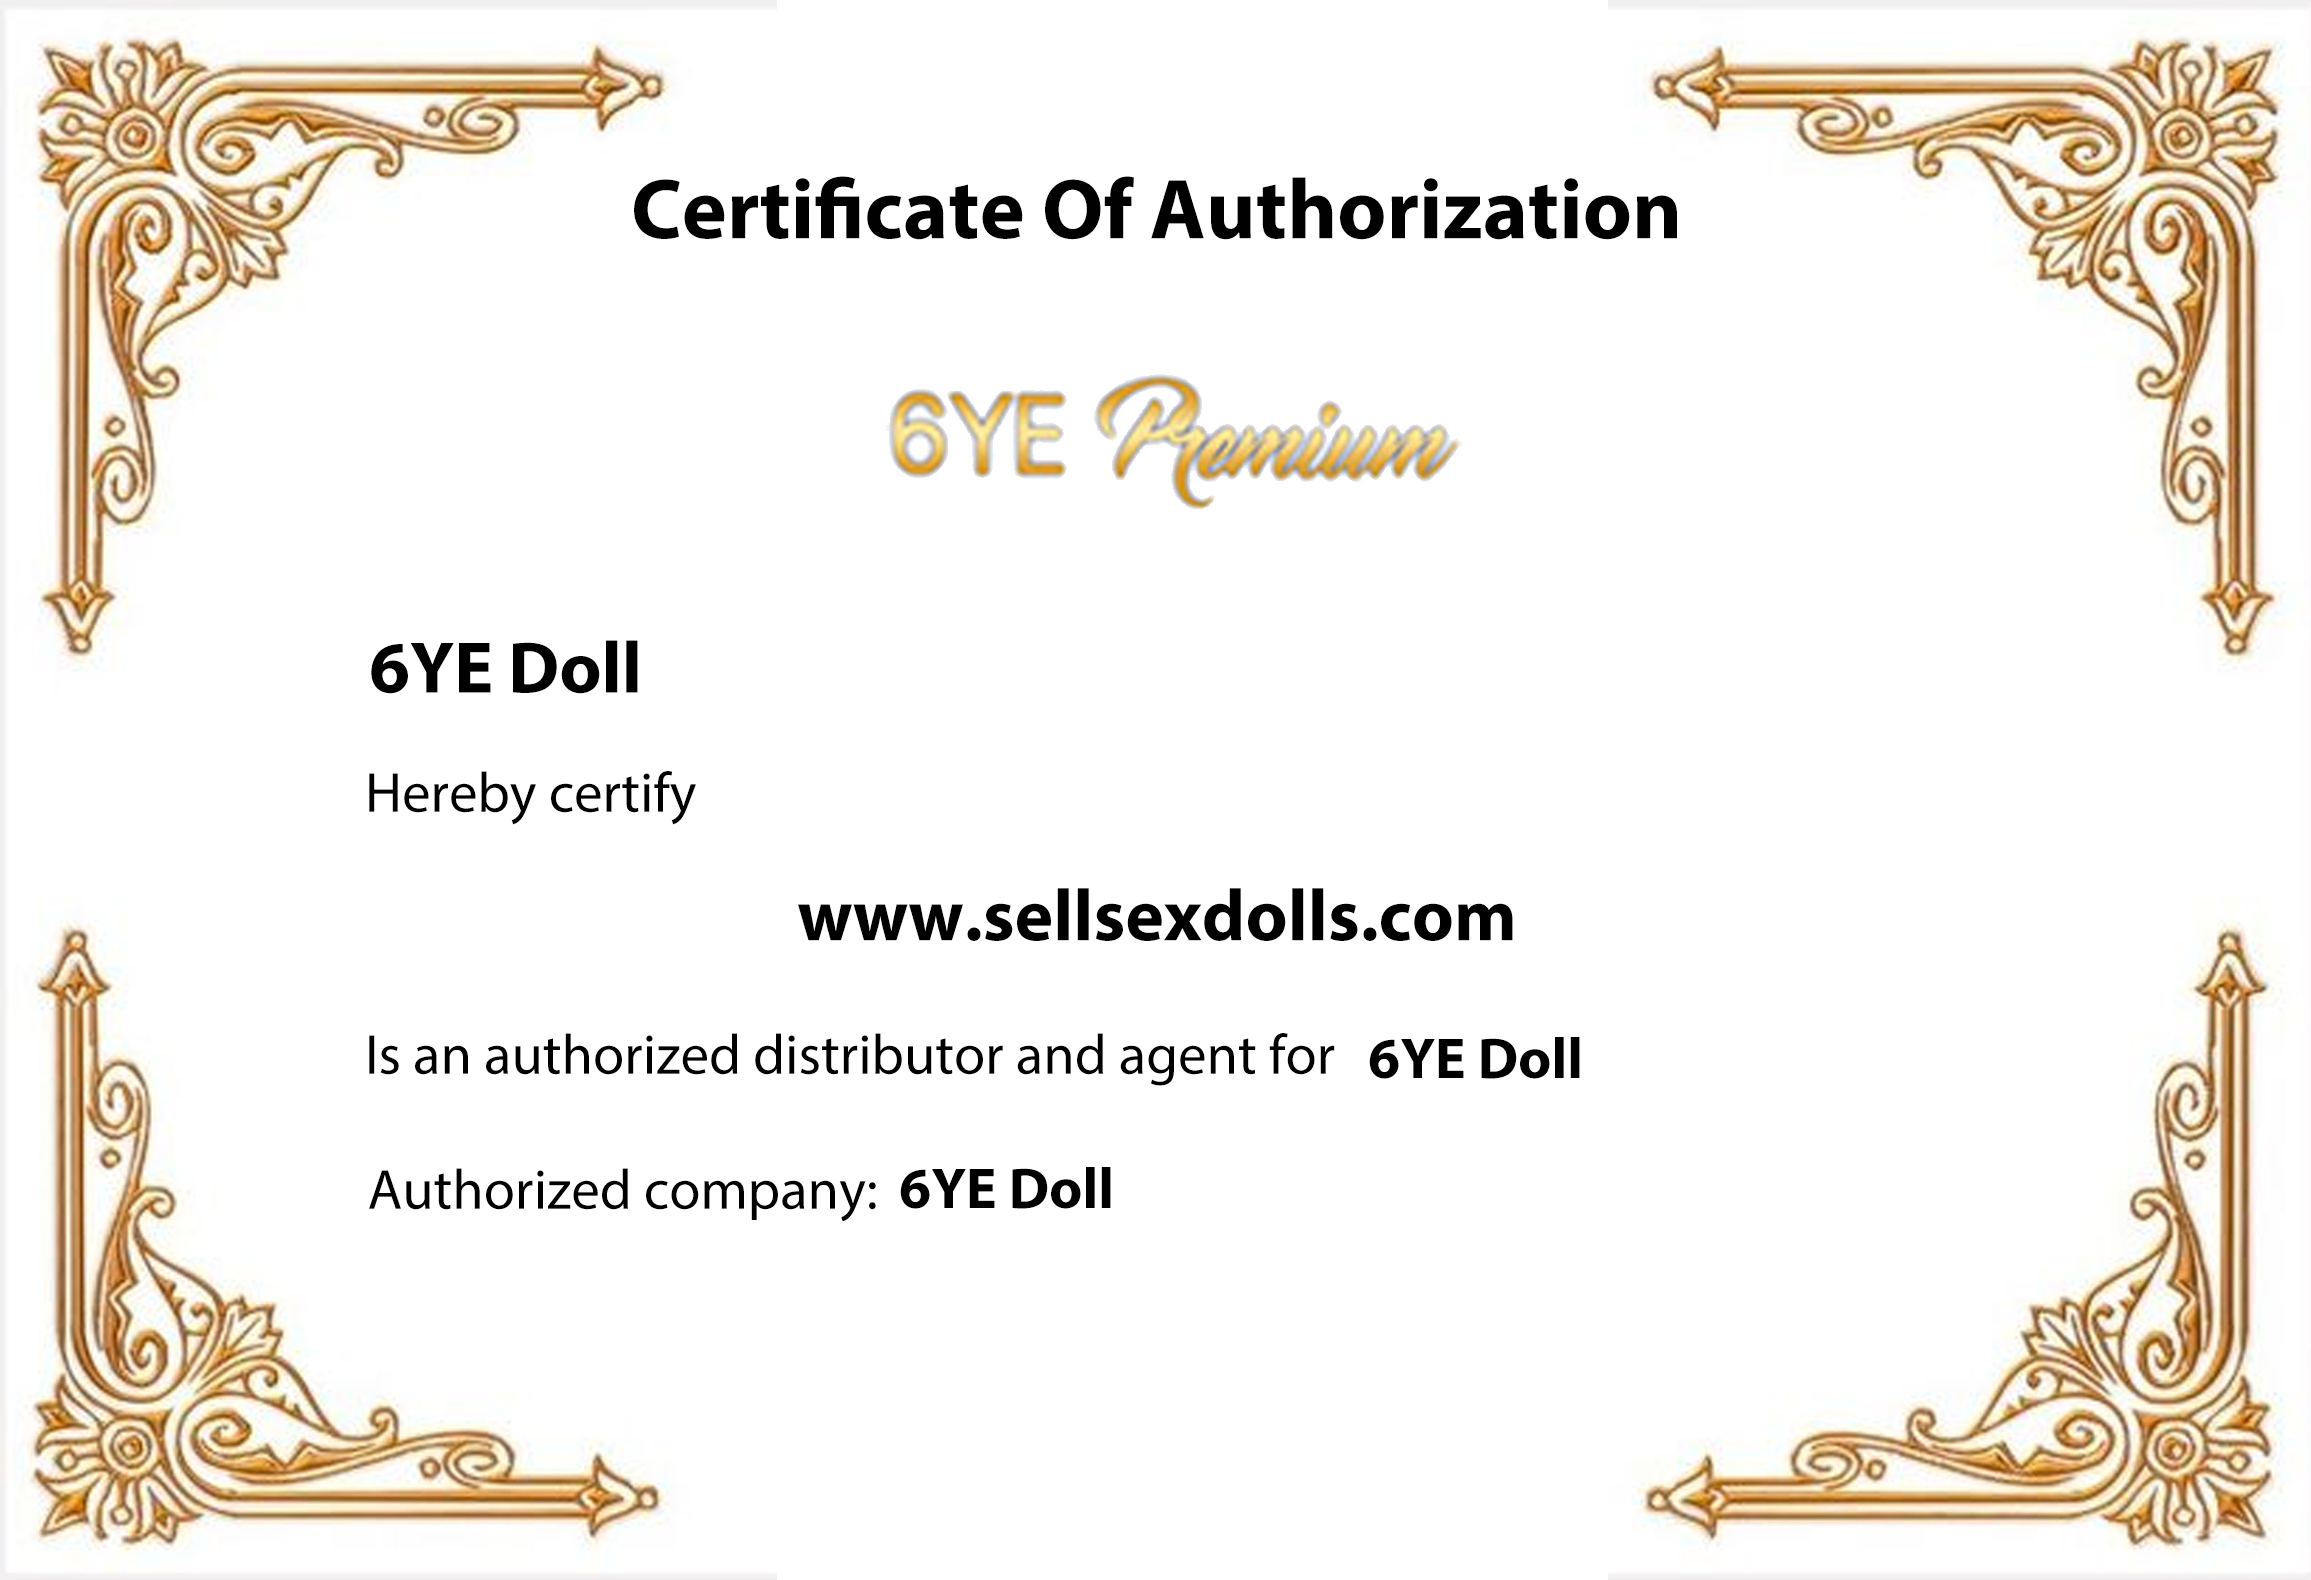 6ye doll certificate